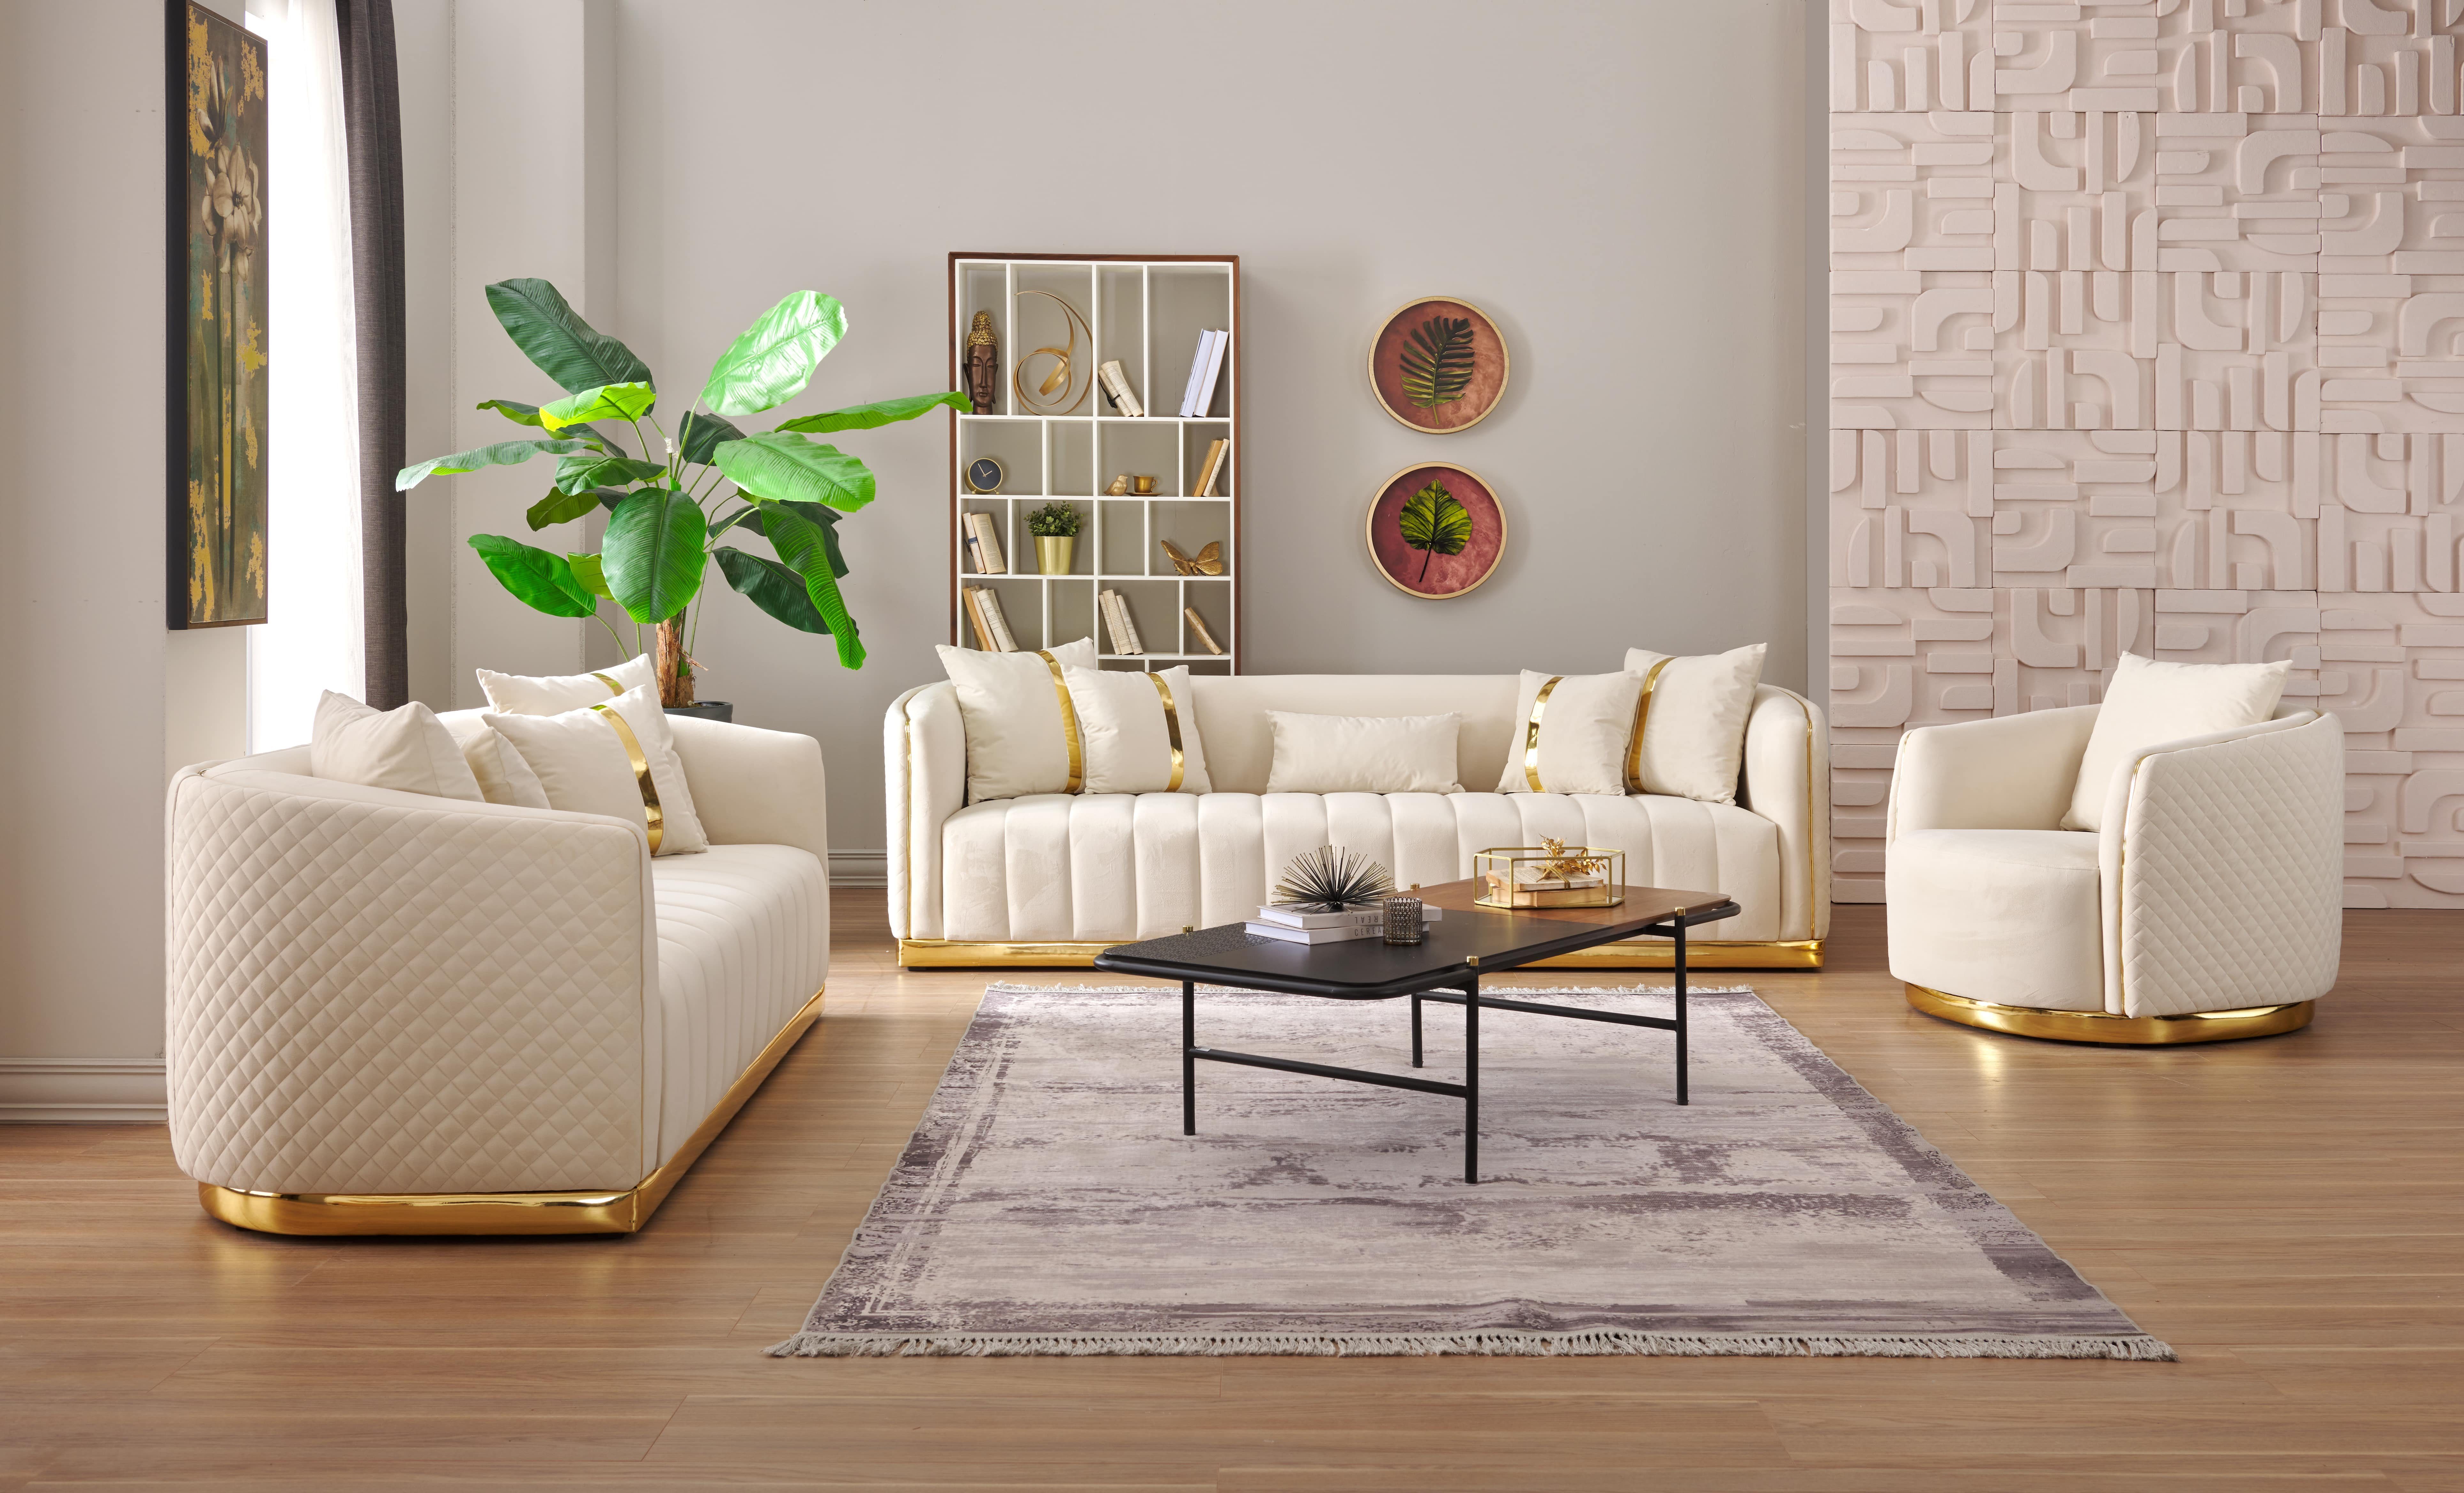 Universum Home & Living Sofa Tokyo 3+2+1 Sofaset, 3-Teilige Sofagarnitur m. Gold Akzente und Diamanten Naht Muster Beige